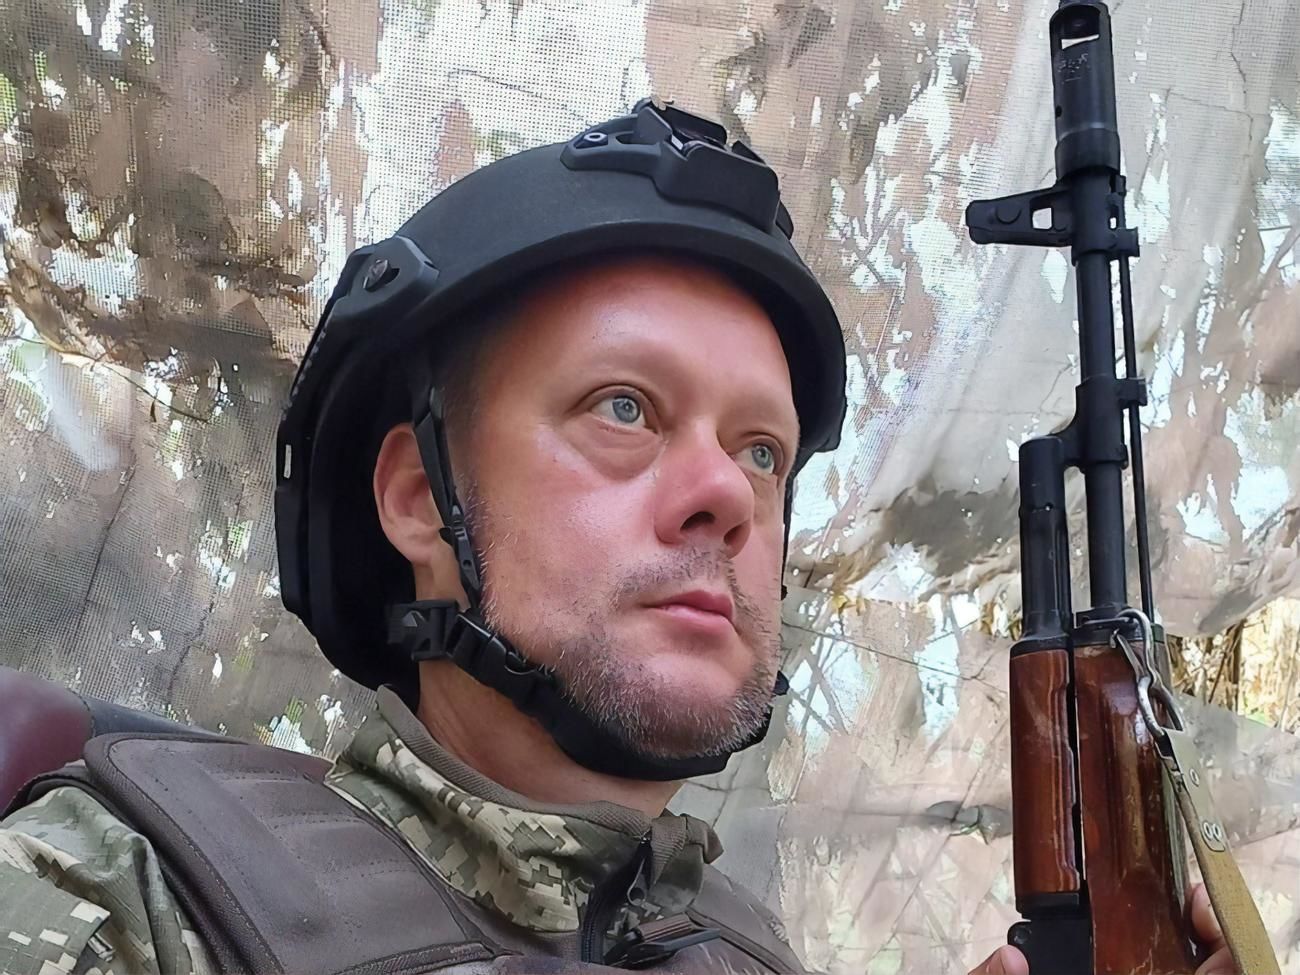 Сазонов обратился к украинским активистам с интересным предложением: "Поговорим про плохое"